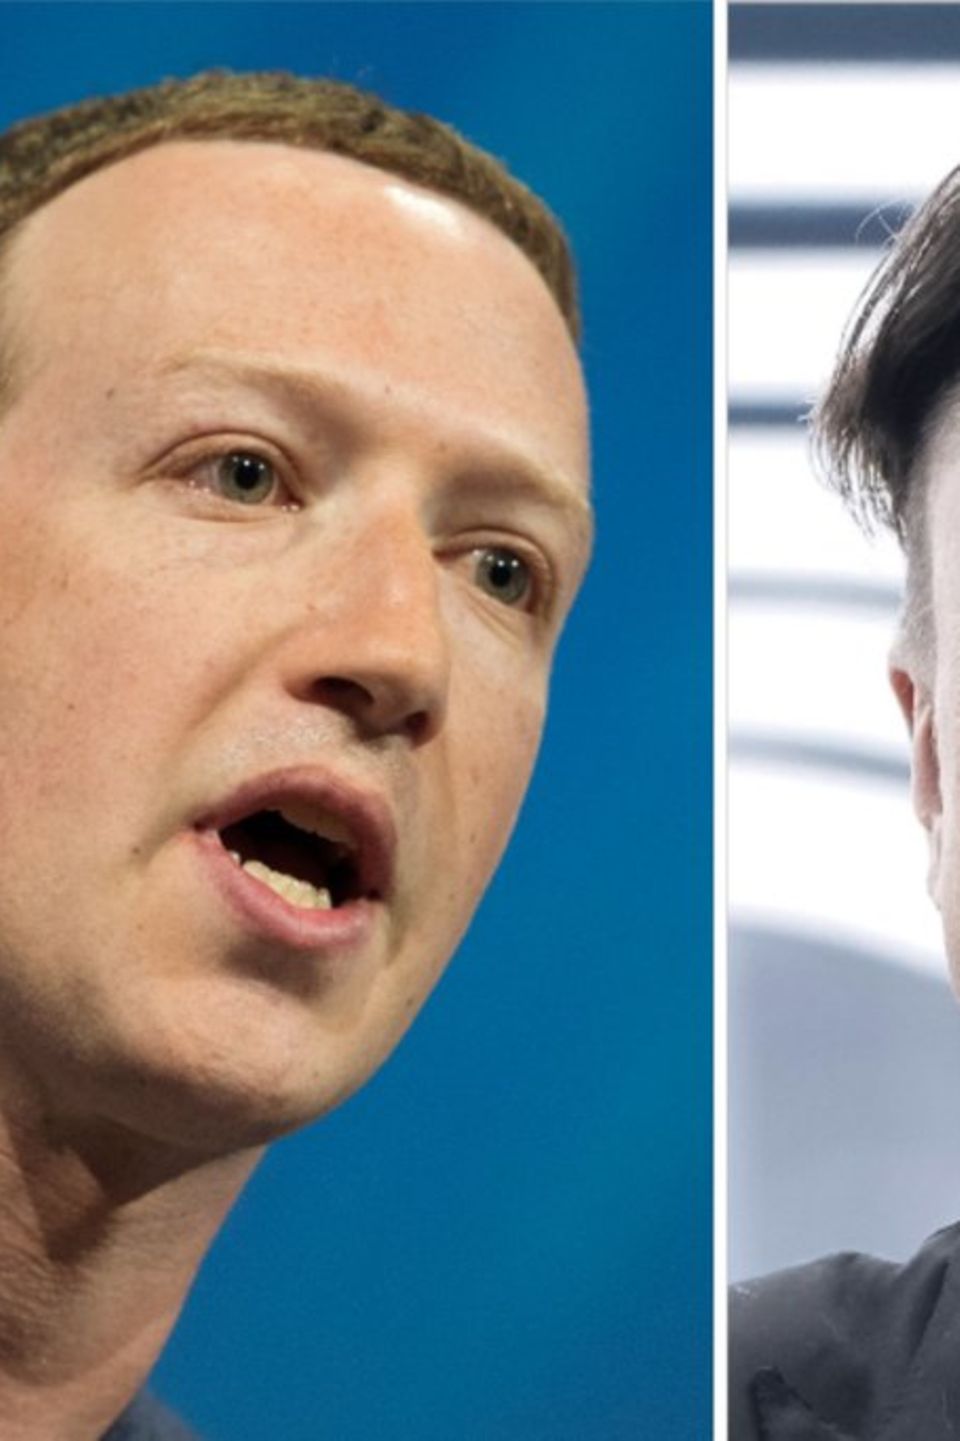 Mark Zuckerberg (l.) und Elon Musk: Kommt es wirklich zum Käfigkampf der Tech-Milliardäre?